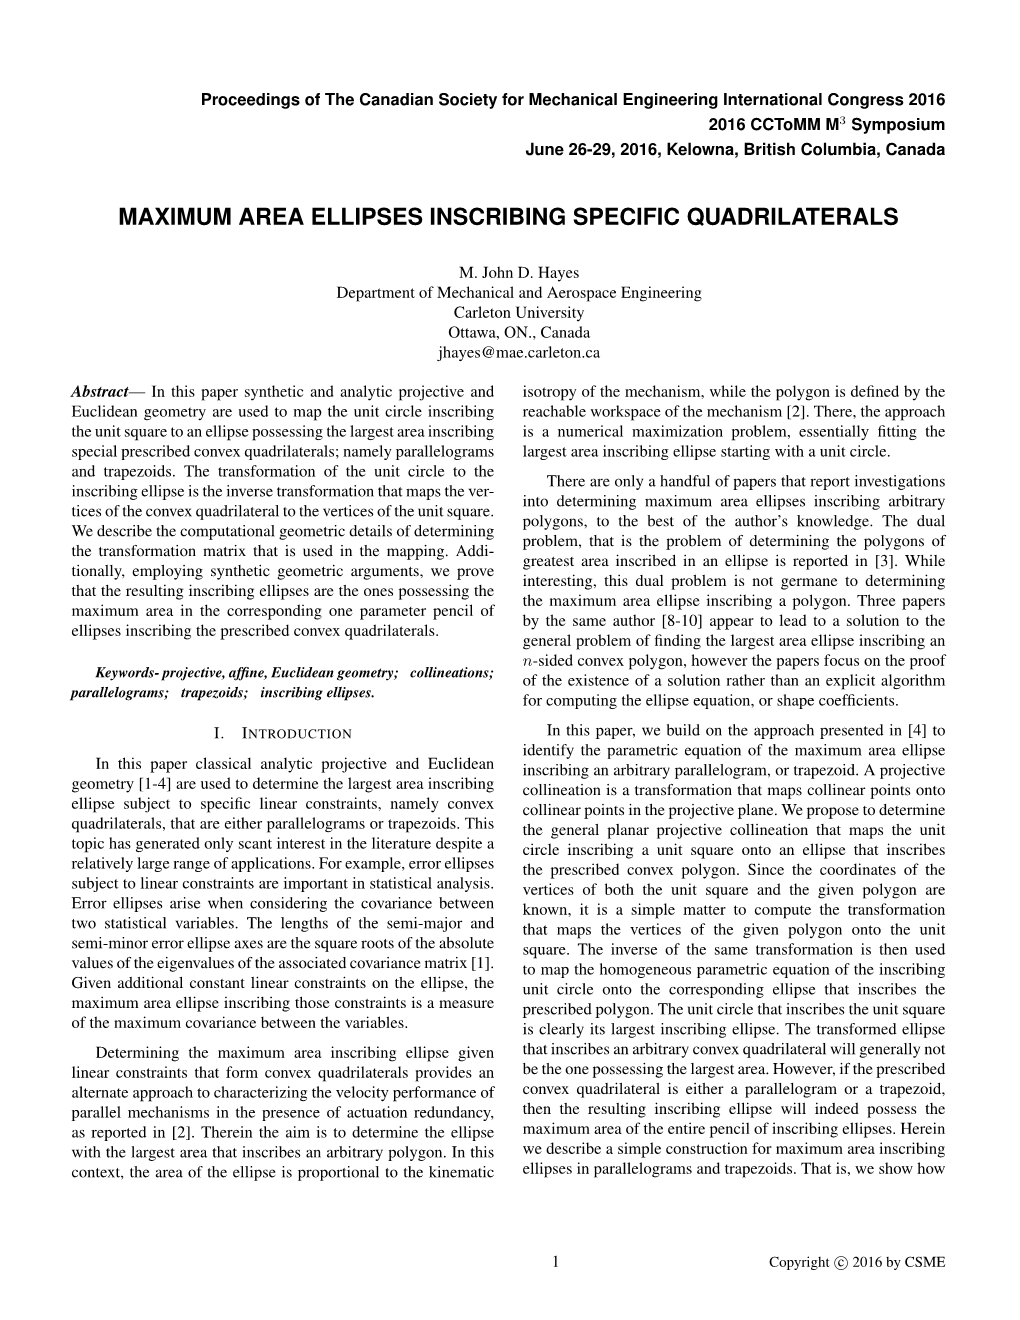 Maximum Area Ellipses Inscribing Specific Quadrilaterals